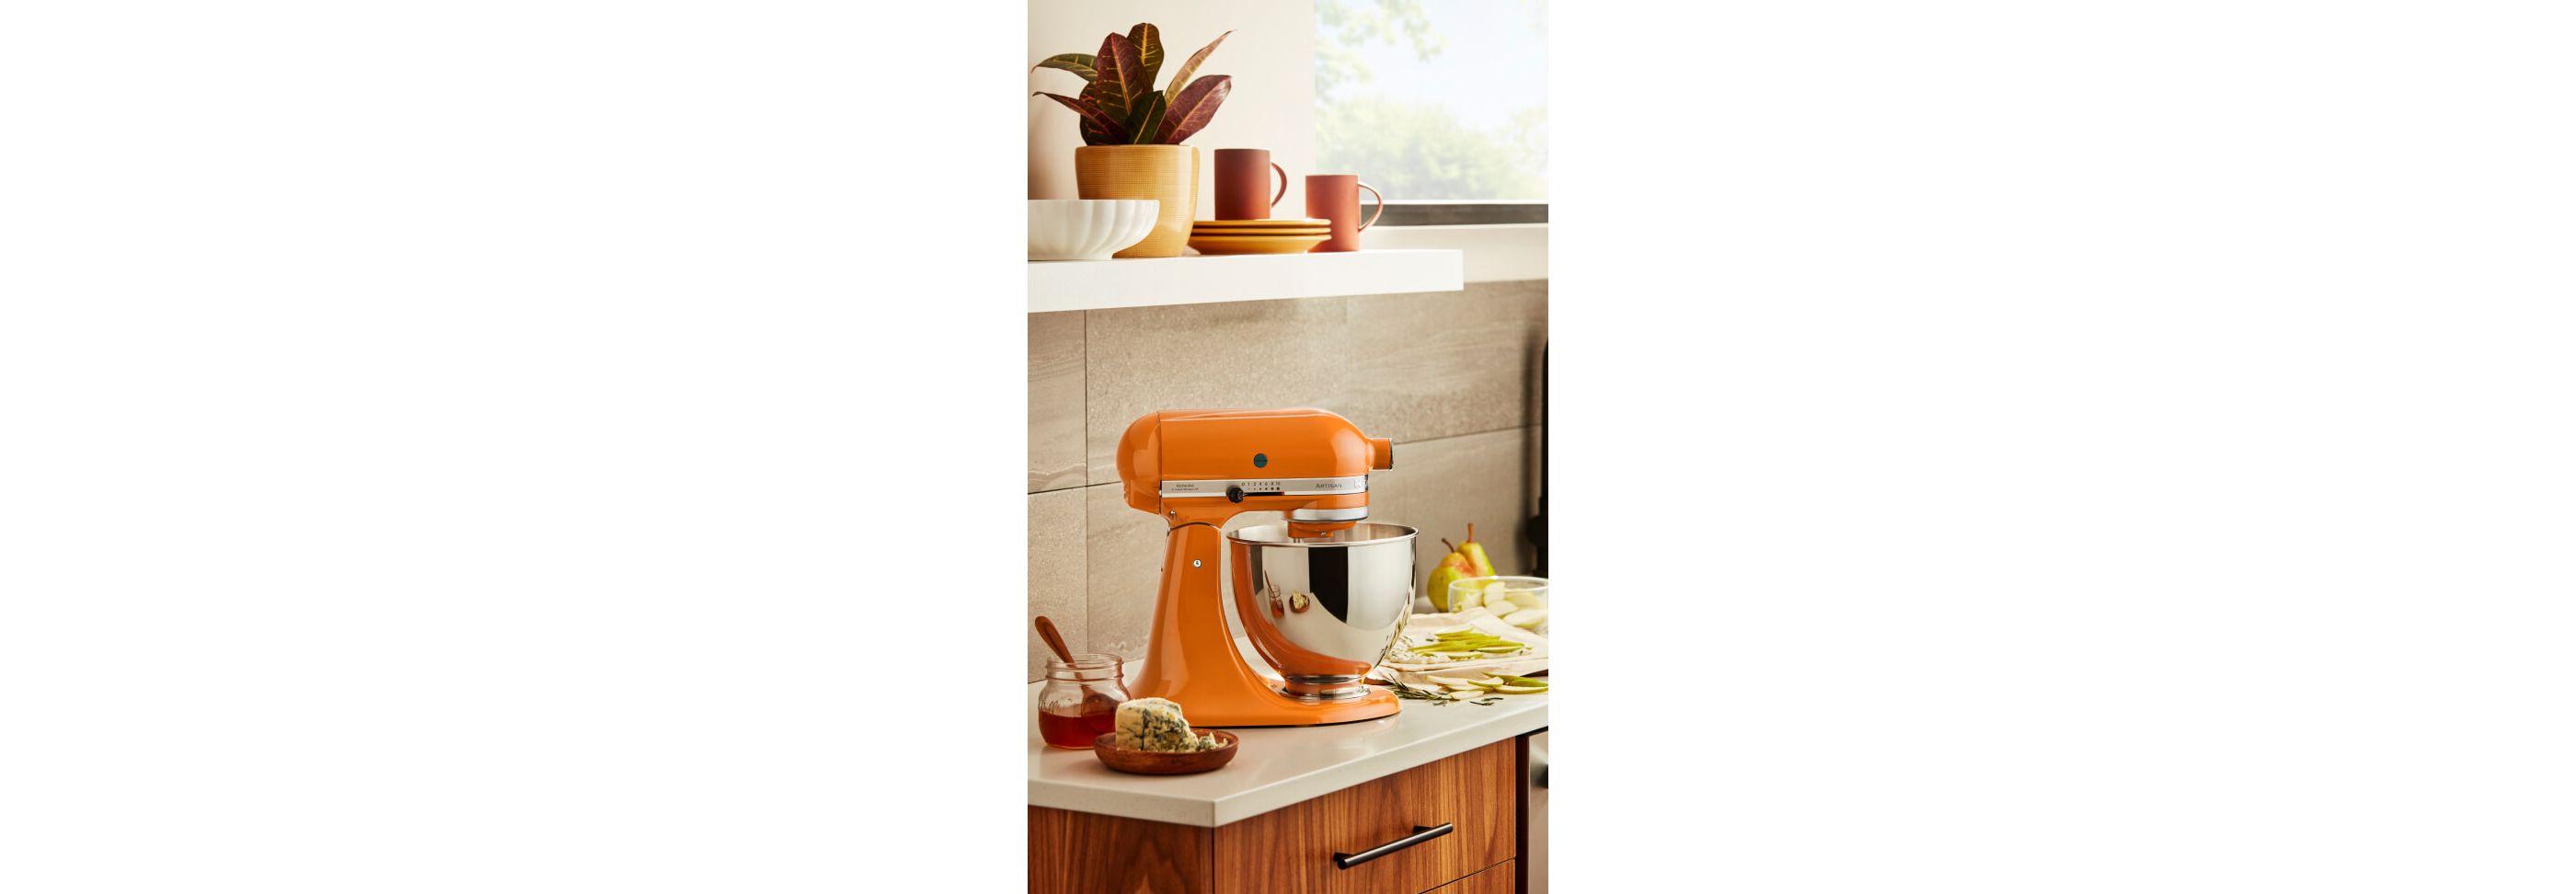  KitchenAid® 7 Quart Bowl-Lift Stand Mixer, White: Home & Kitchen